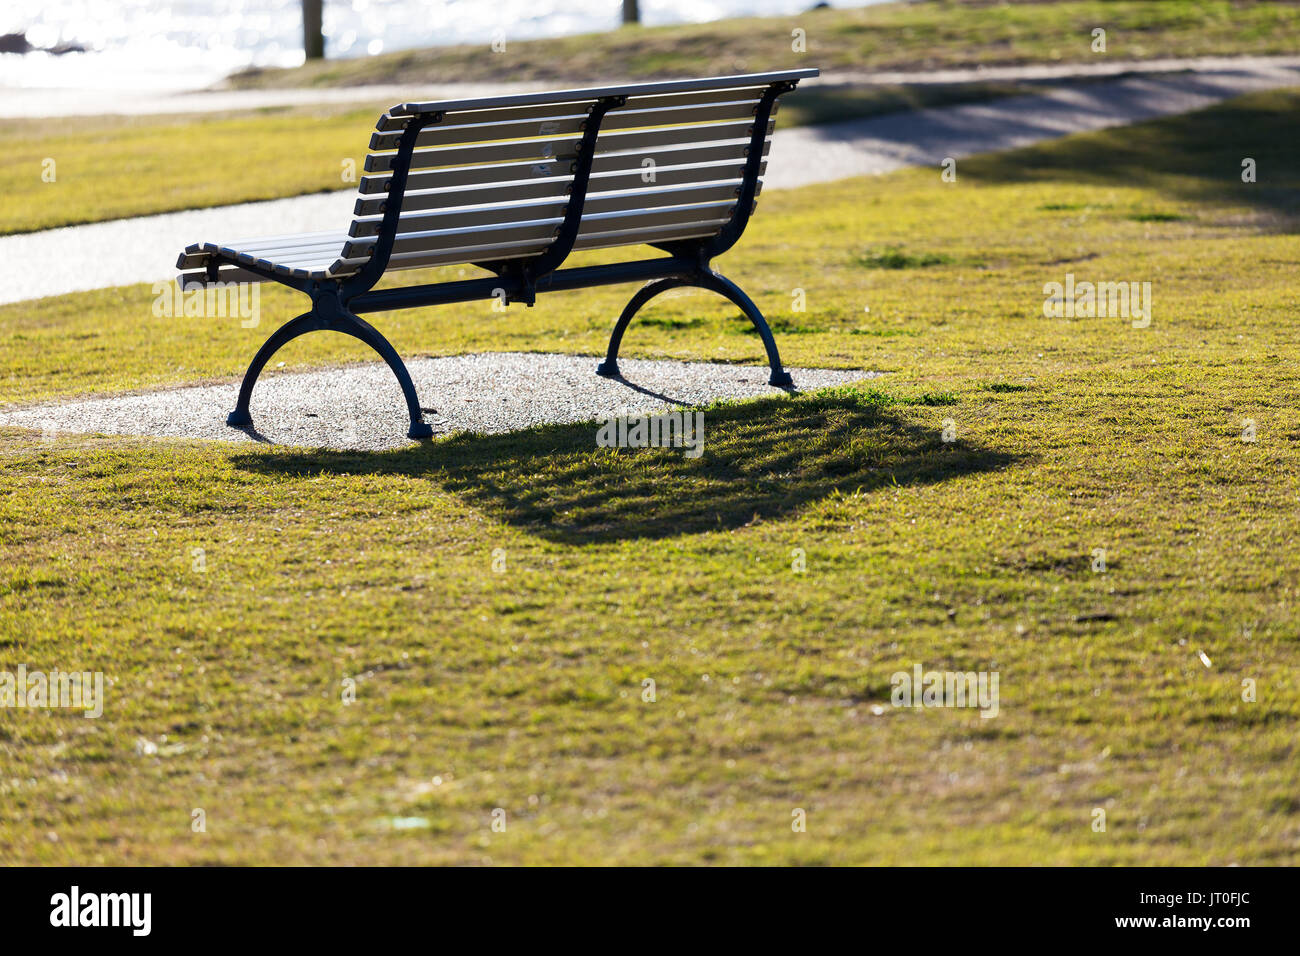 Eine leere Park Sitz durch das Meer und den Strand, hinterleuchtet, durch lebendige und helle Morgensonne Licht ohne Menschen in Sicht. Stockfoto